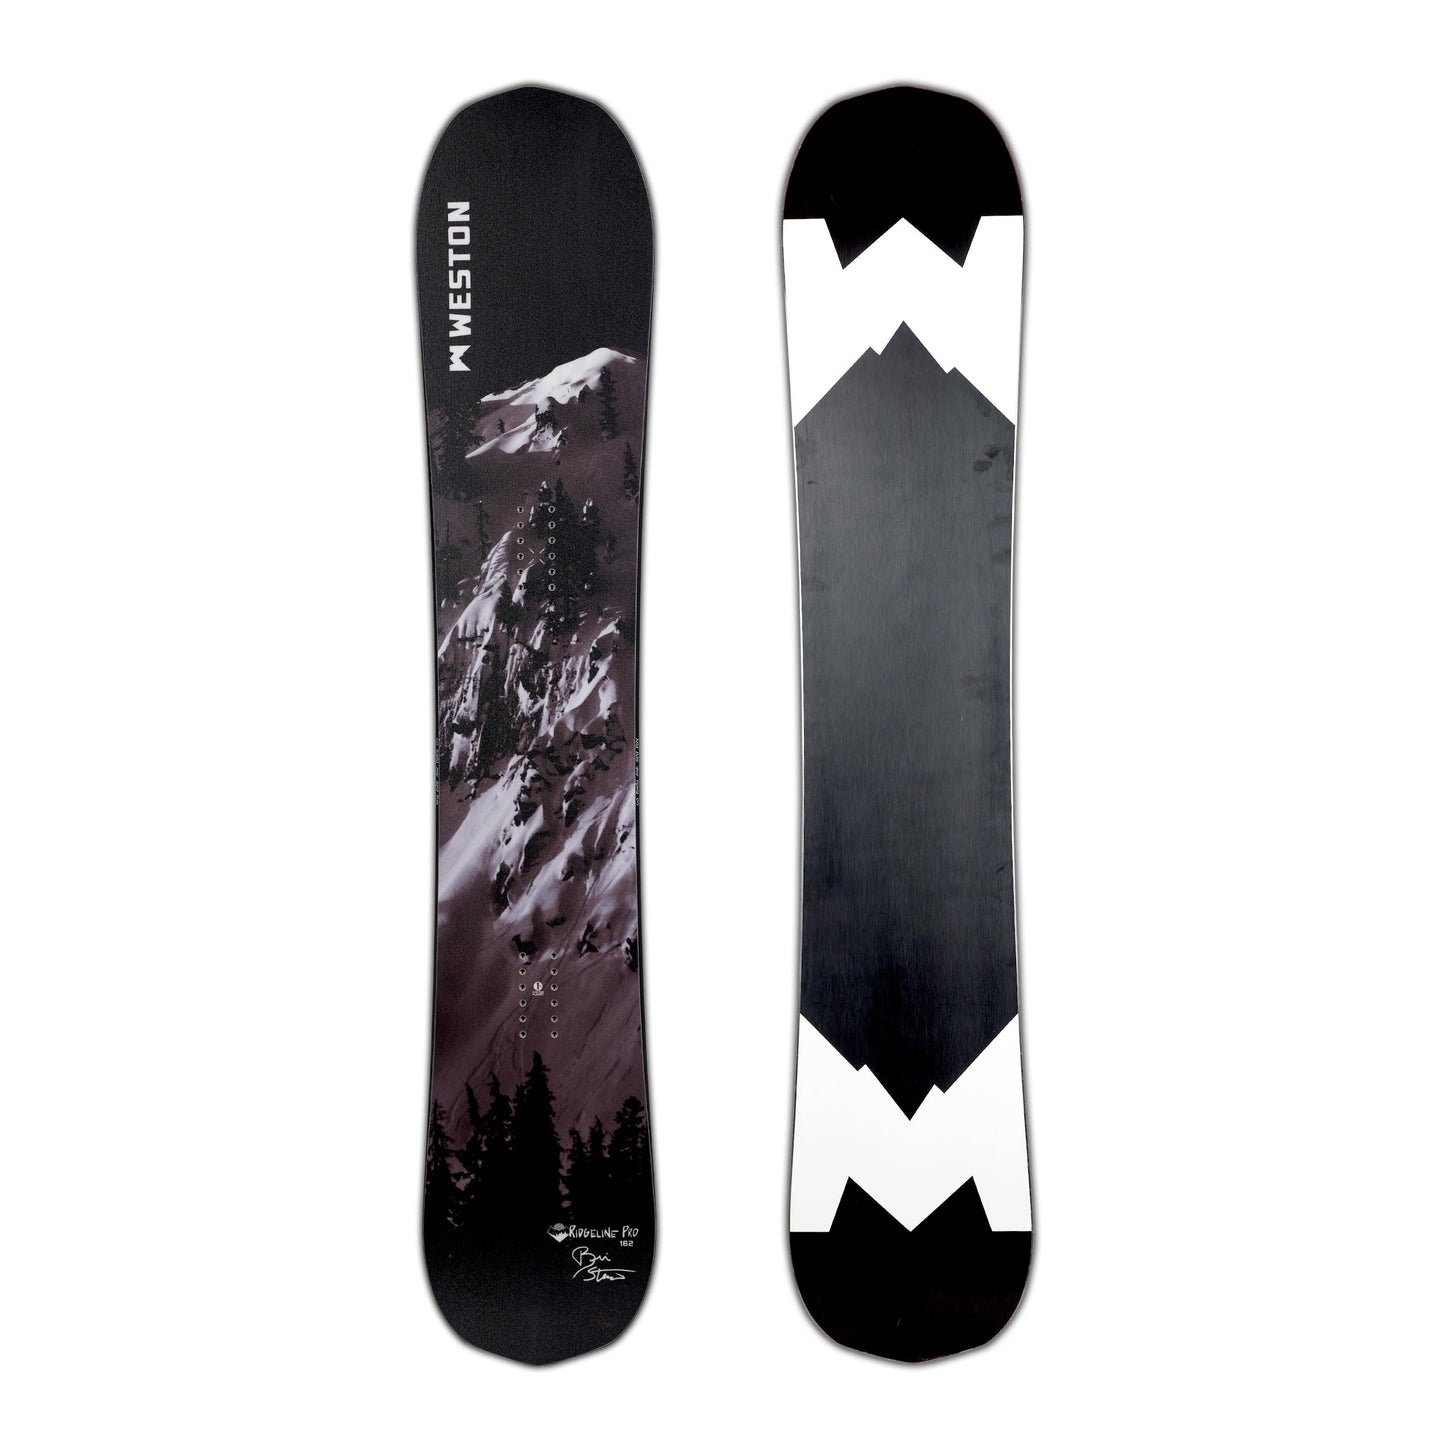 Ridgeline Snowboard x Stenerson Pro